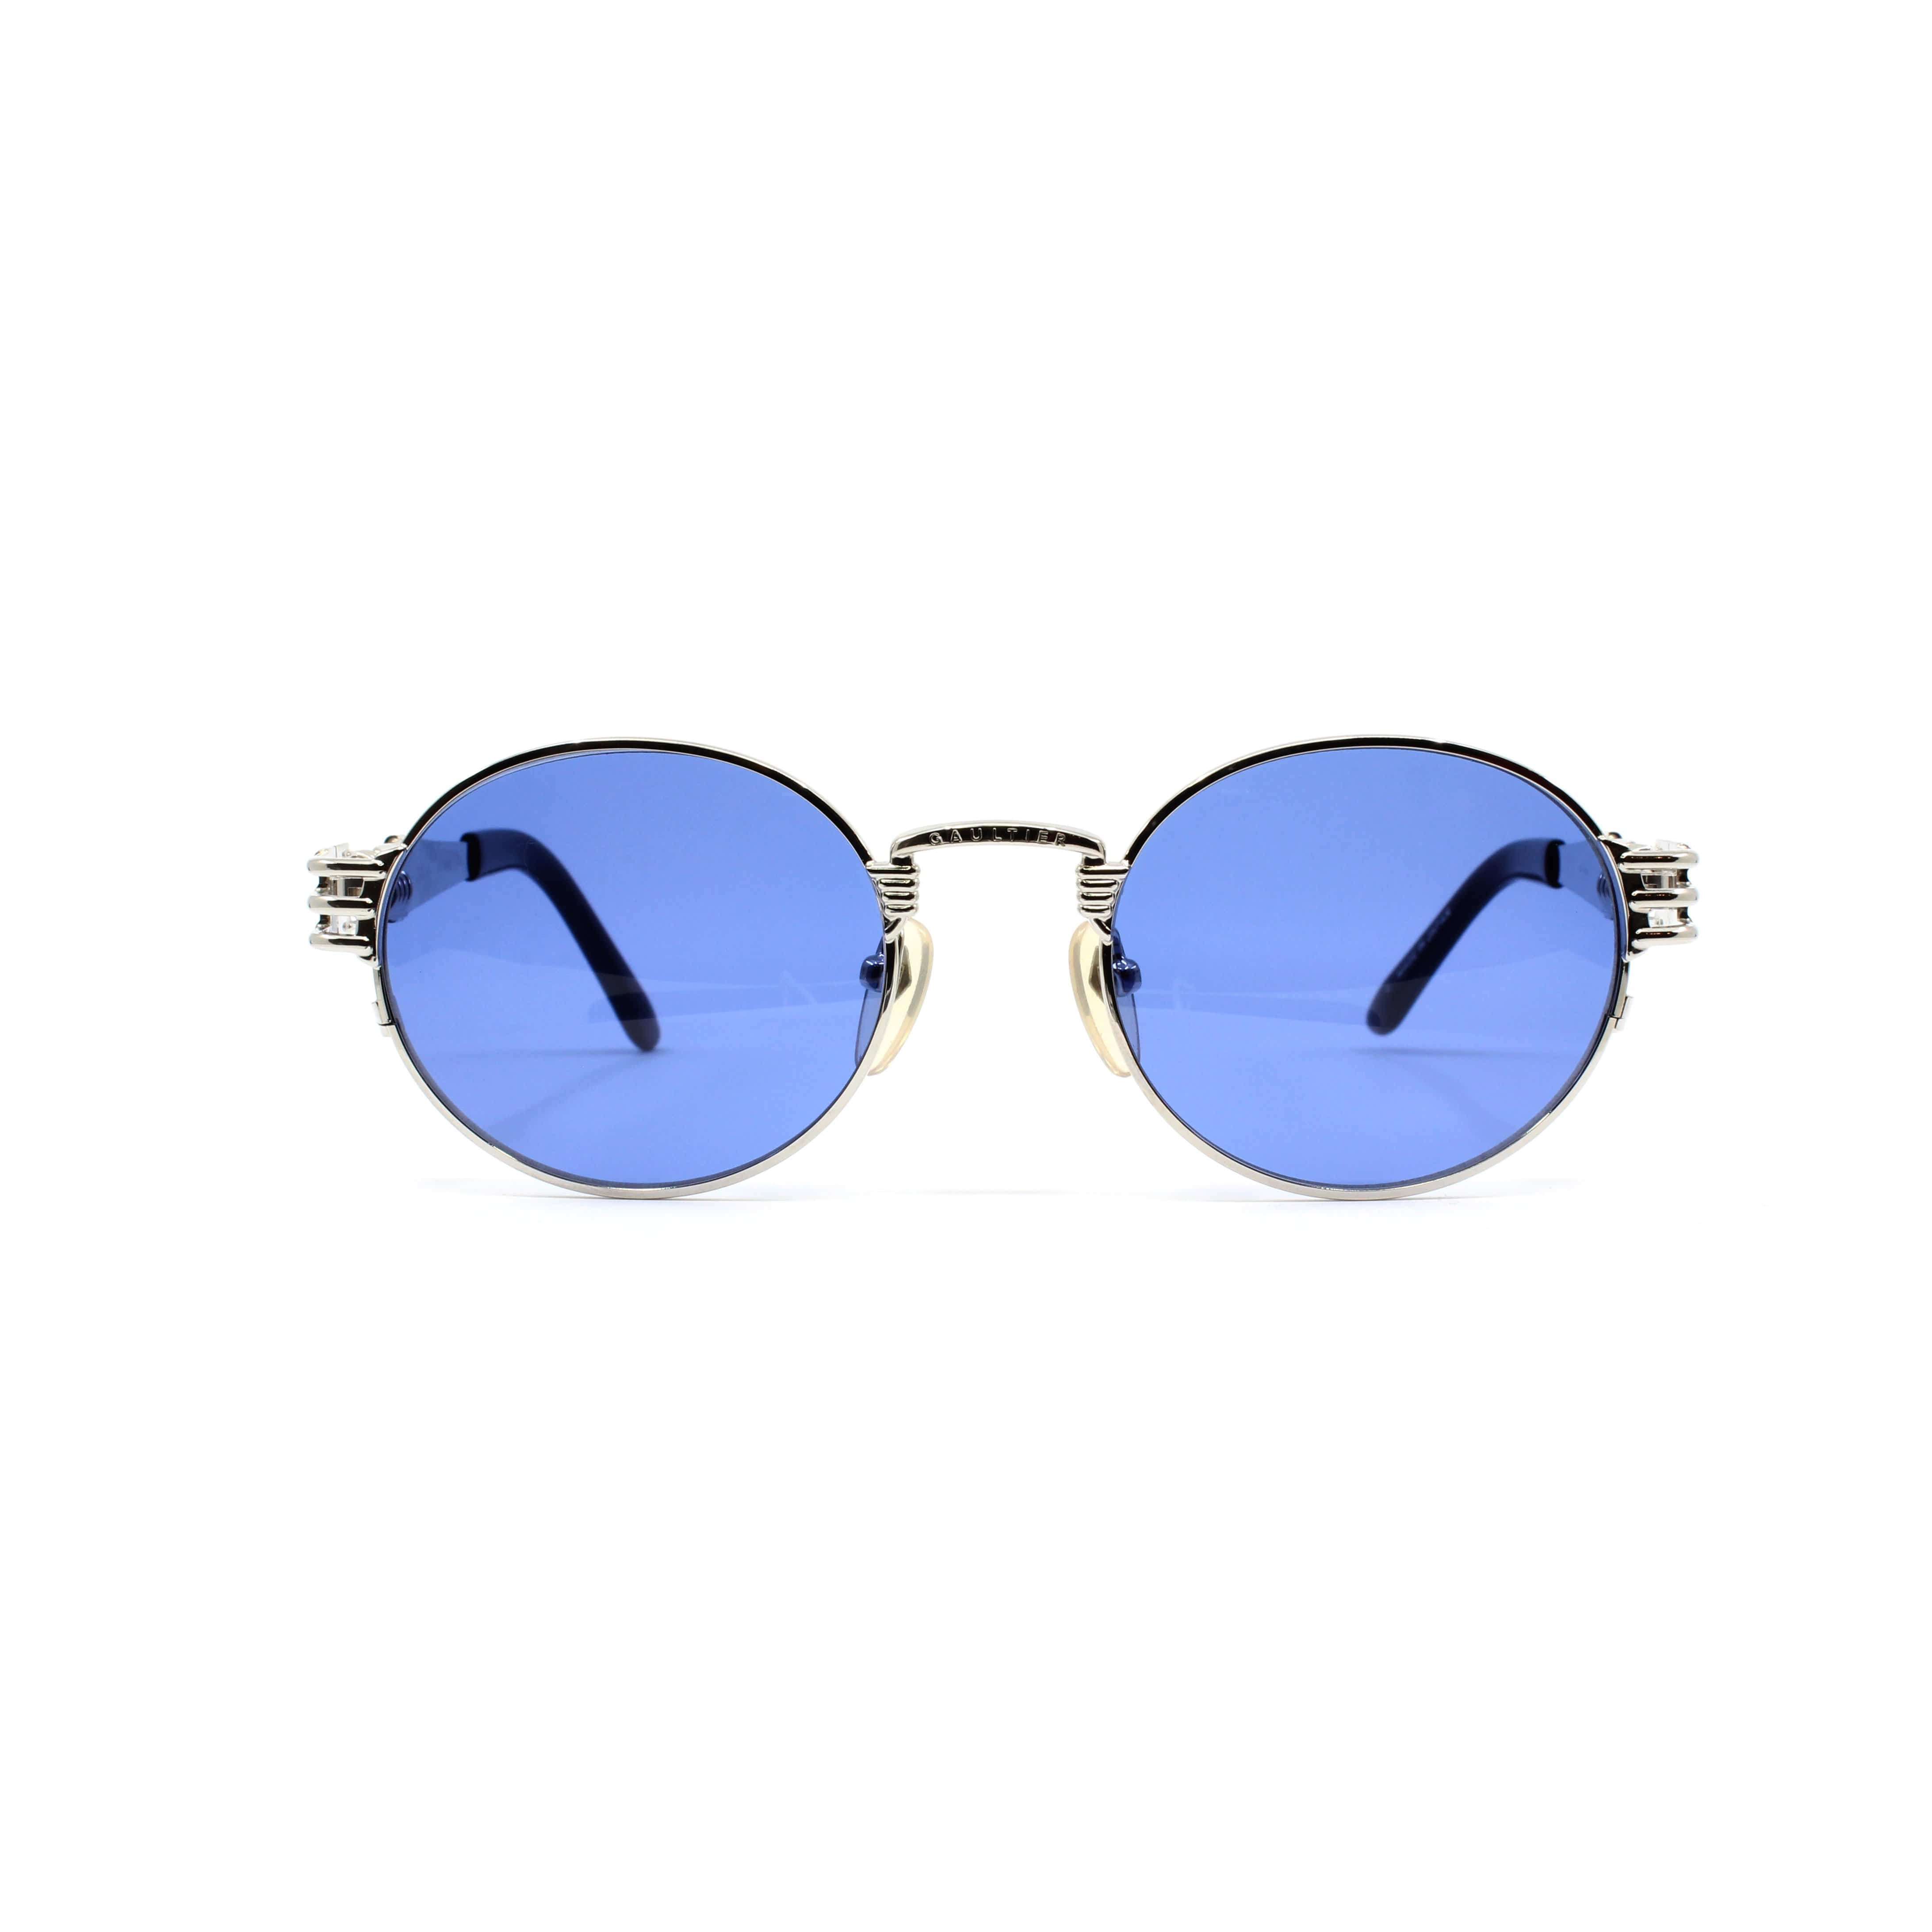 Jean Paul Gaultier Silver 56-6106 Sunglasses